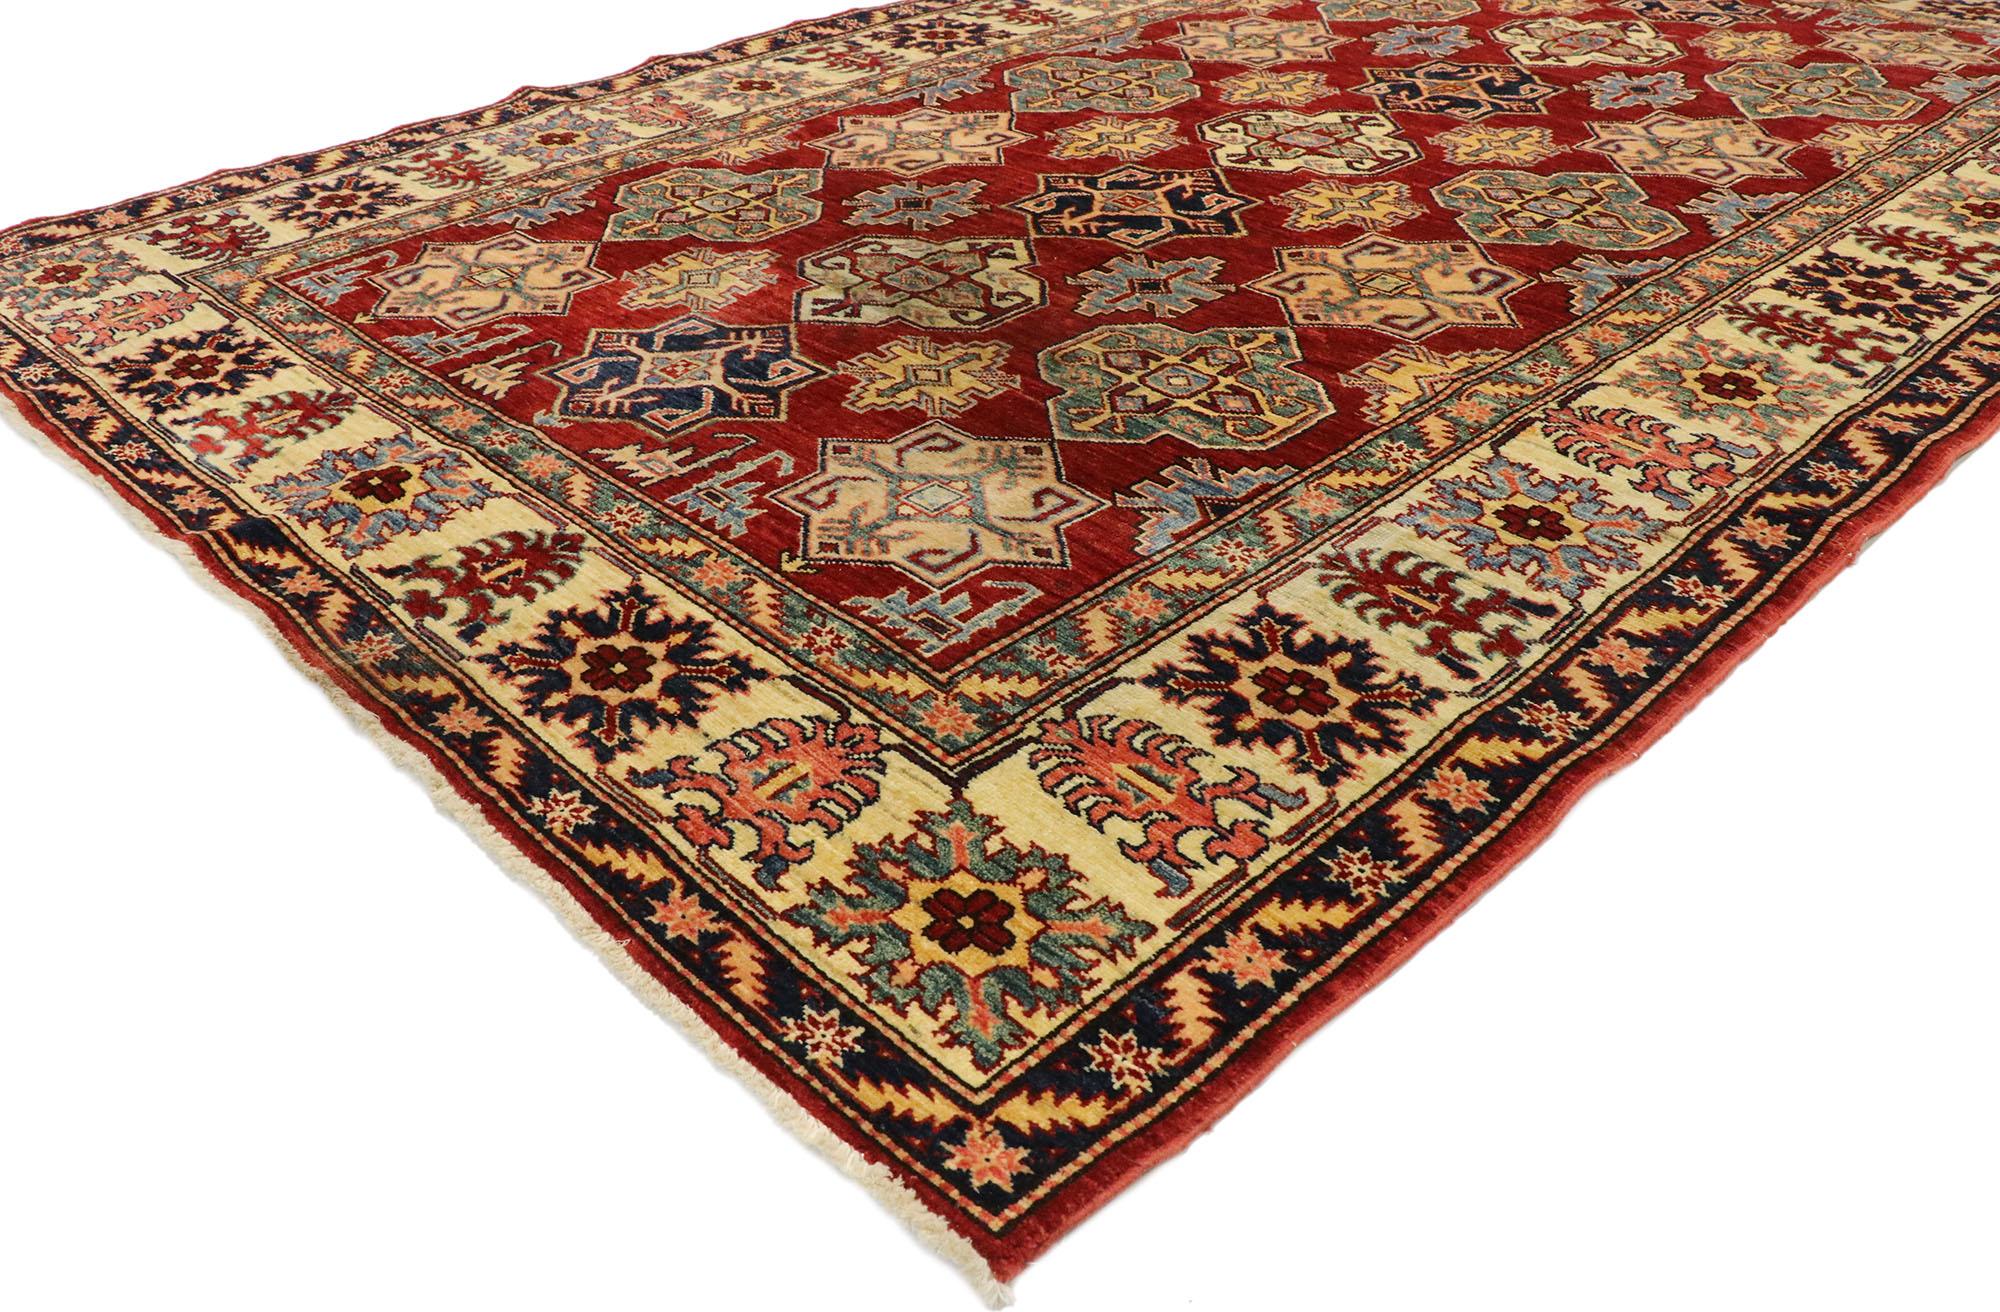 77532, tapis pakistanais vintage au style colonial américain moderne. Affichant une symétrie bien équilibrée et une esthétique moderne, ce tapis pakistanais vintage en laine nouée à la main incarne le style colonial américain avec des vibrations